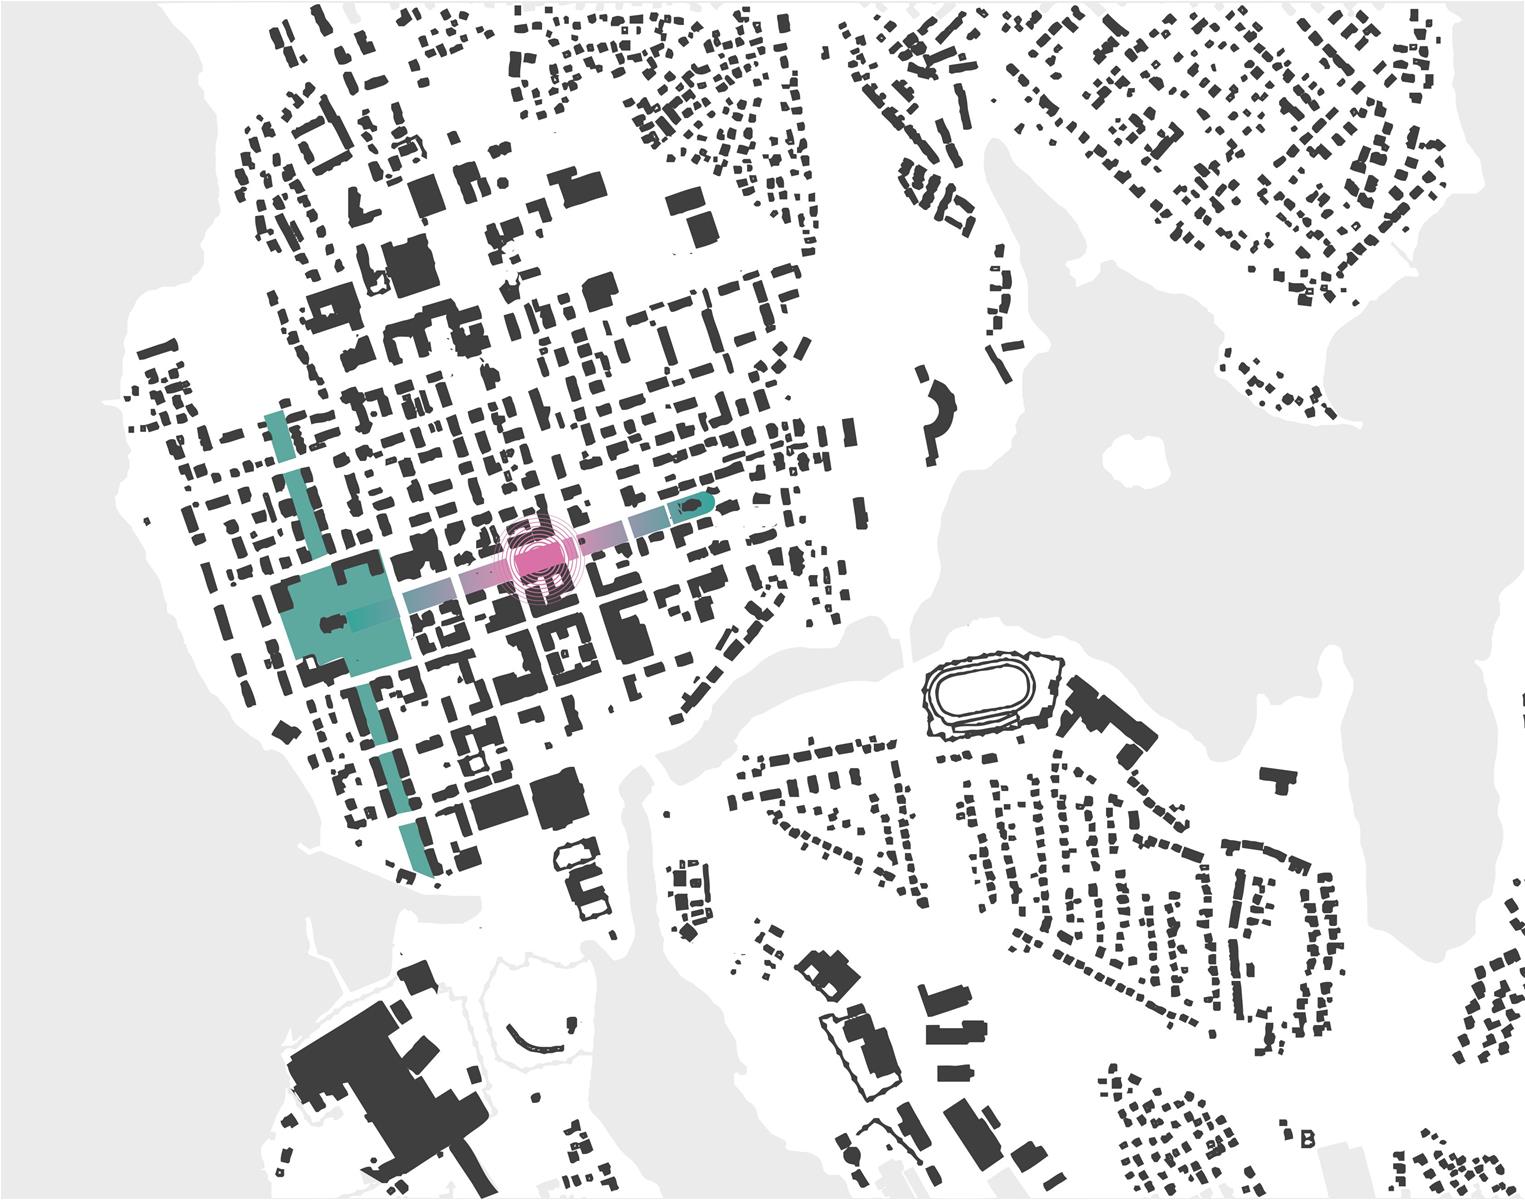 Sijaintikartassa on Iisalmen keskustan mustavalkoiseen rakeisuuskuvaan nostettu vihreällä Iisalmen kirkkopuisto, johon on punaisella väritetty suunnittelu alue eli Kirkkopuiston kukkiva lohko. 